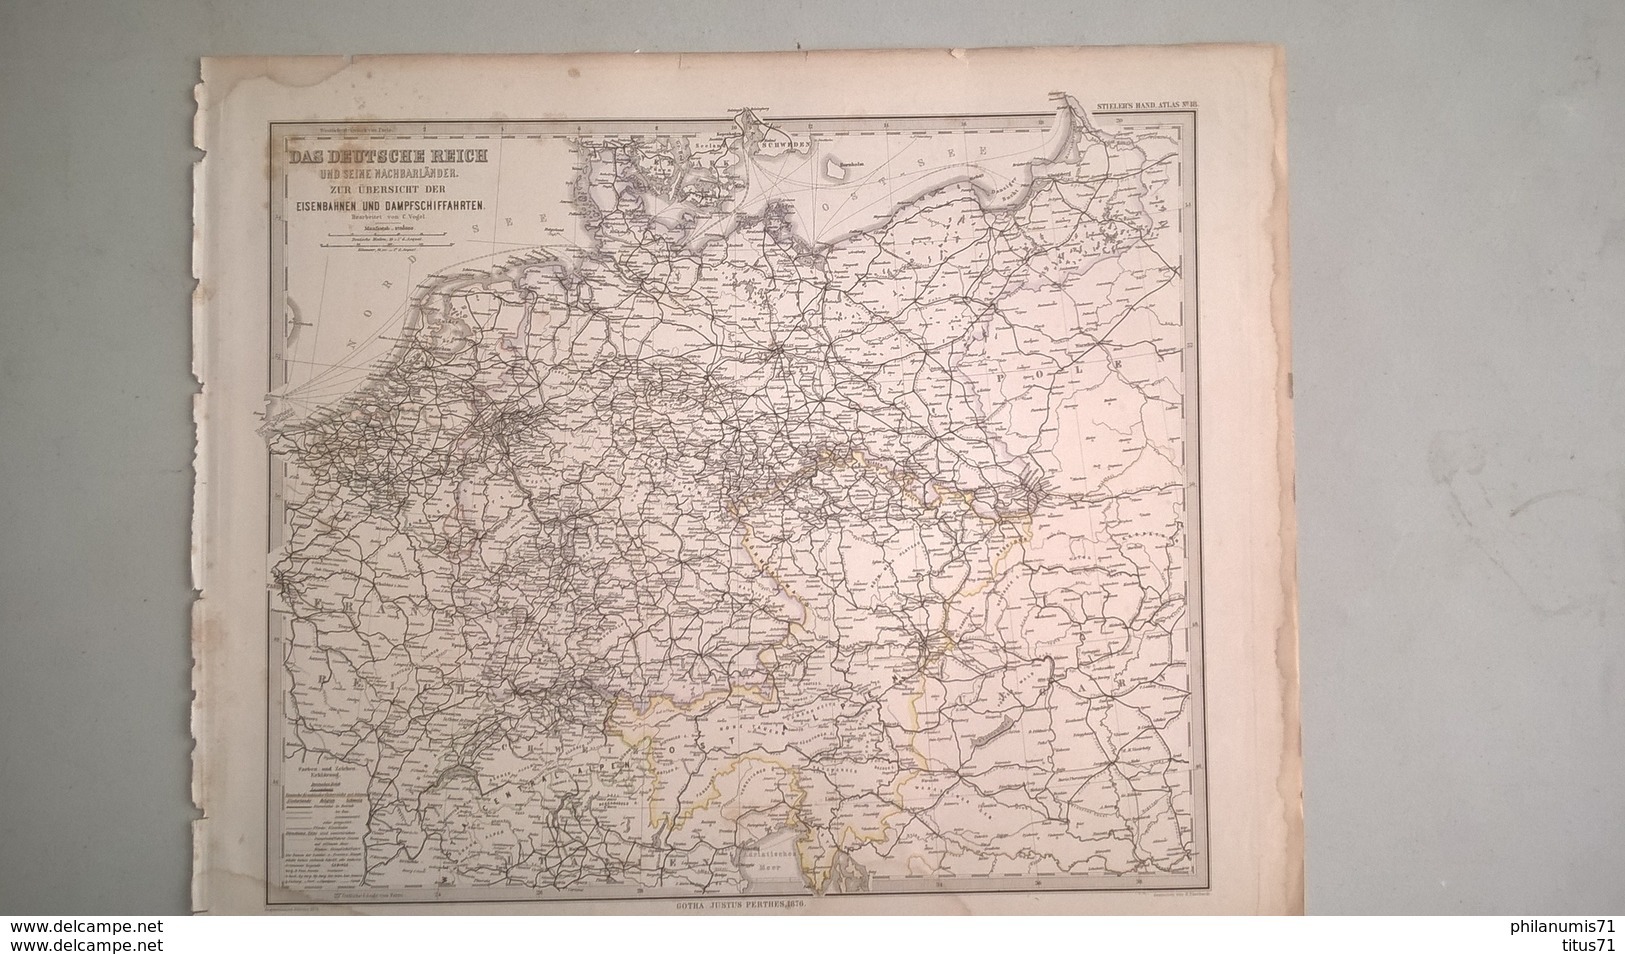 Carte D'Allemagne Et Pays Voisins - Editeur Justus Perthes  1876 - Stieler's Hand Atlas N° 18 - 38 X 45 Cm - Pas De Pli - Cartes Géographiques